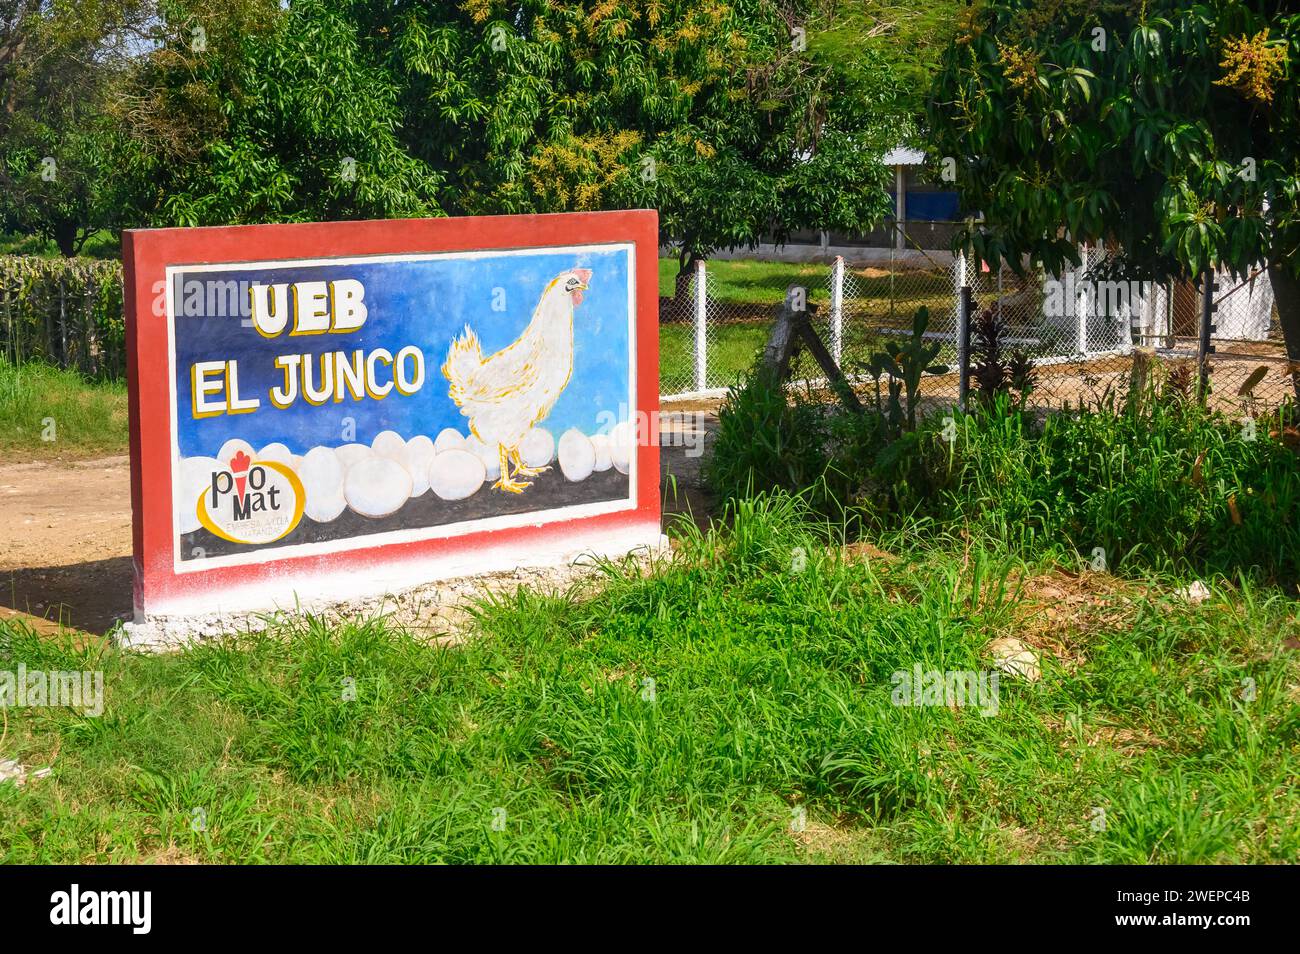 Cement sign UEB El Junco, Cuba Stock Photo